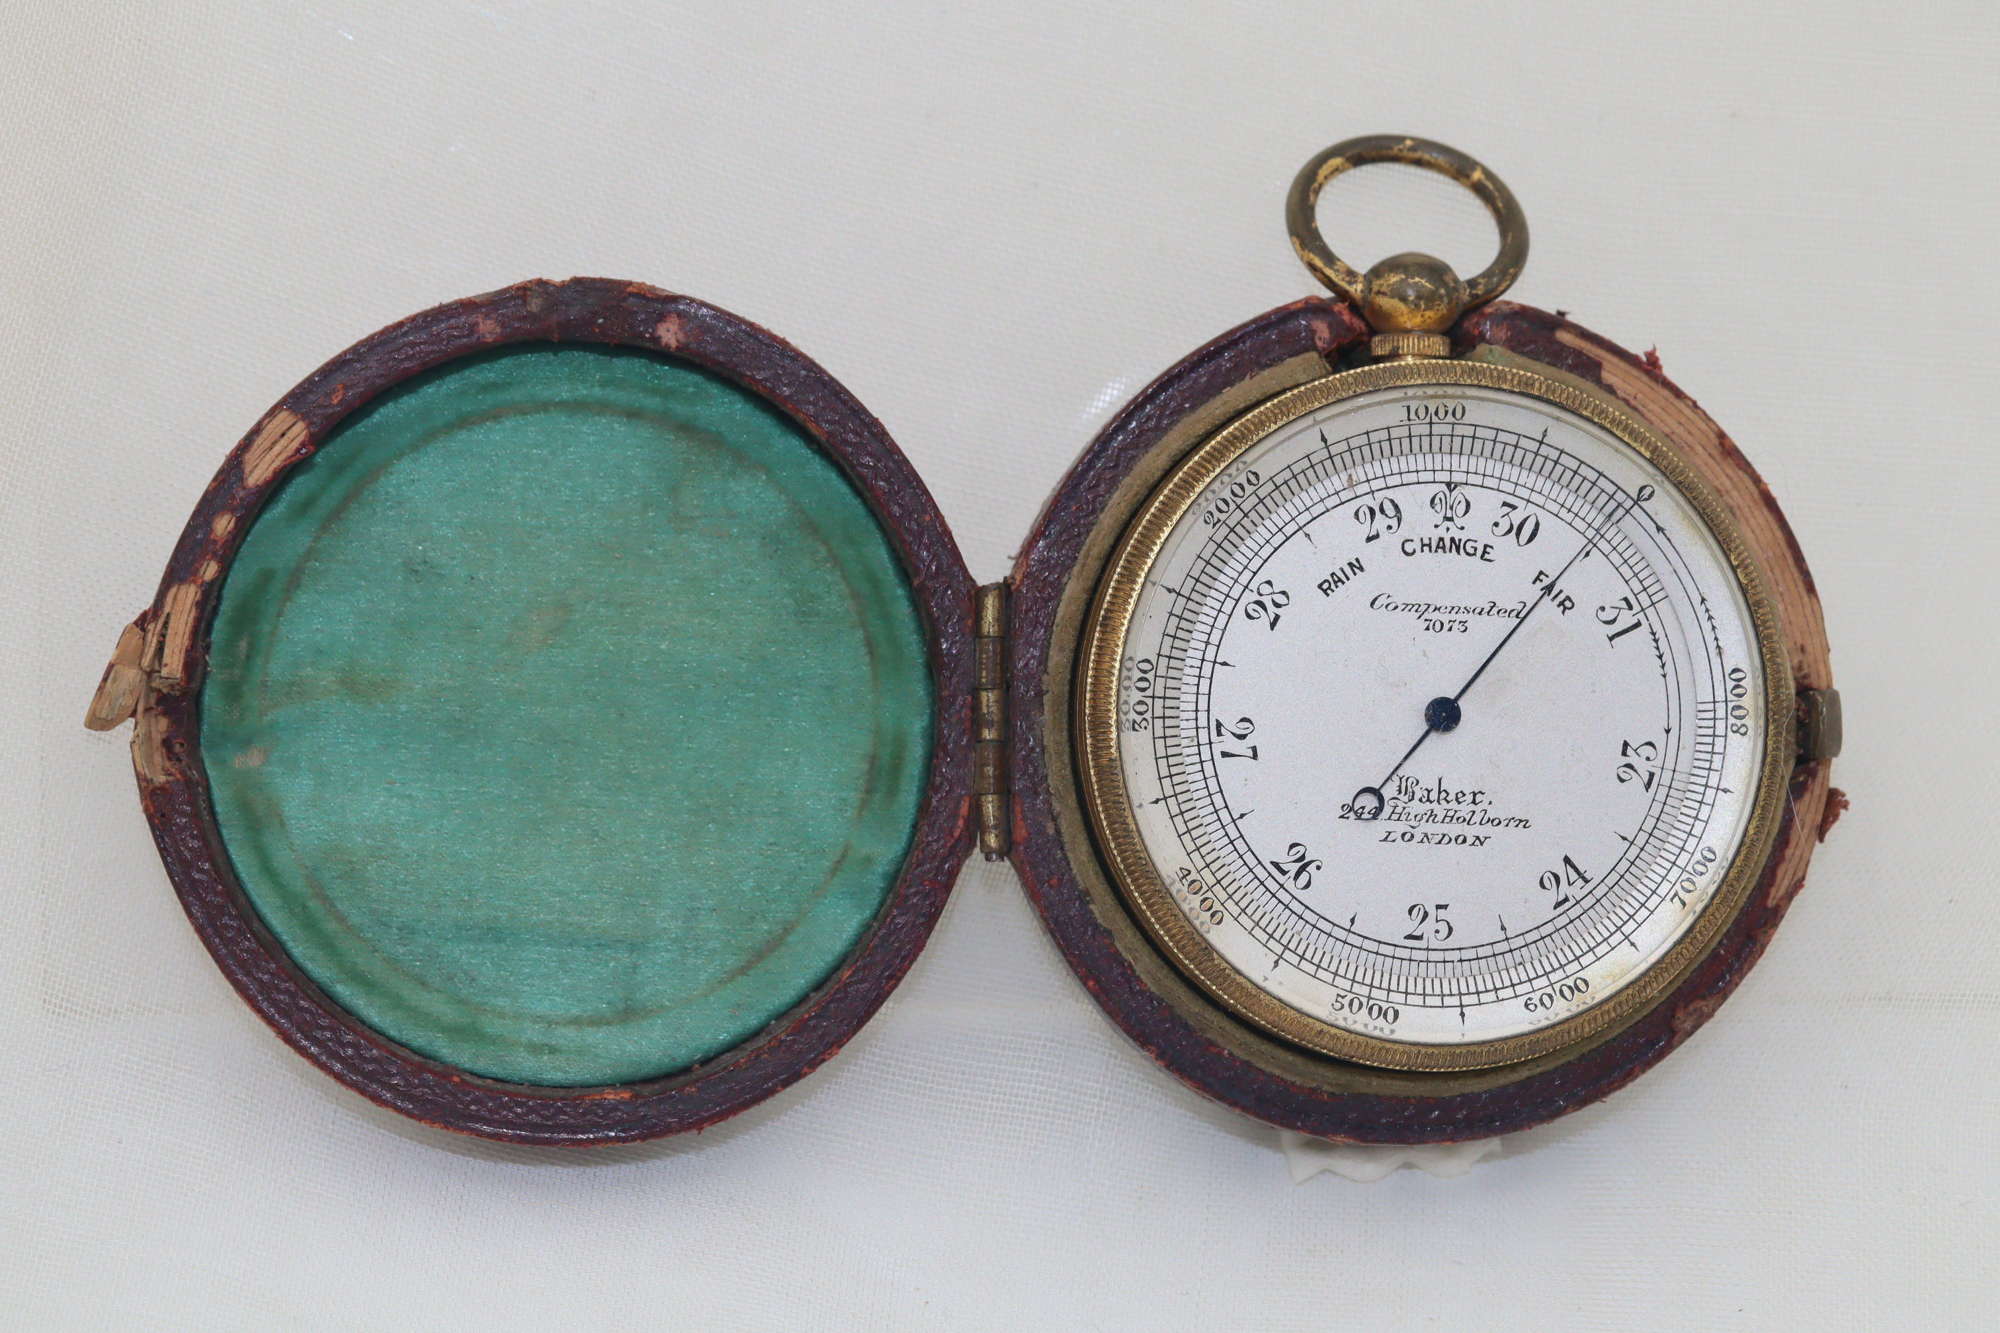 Pocket barometer by C Baker in original case